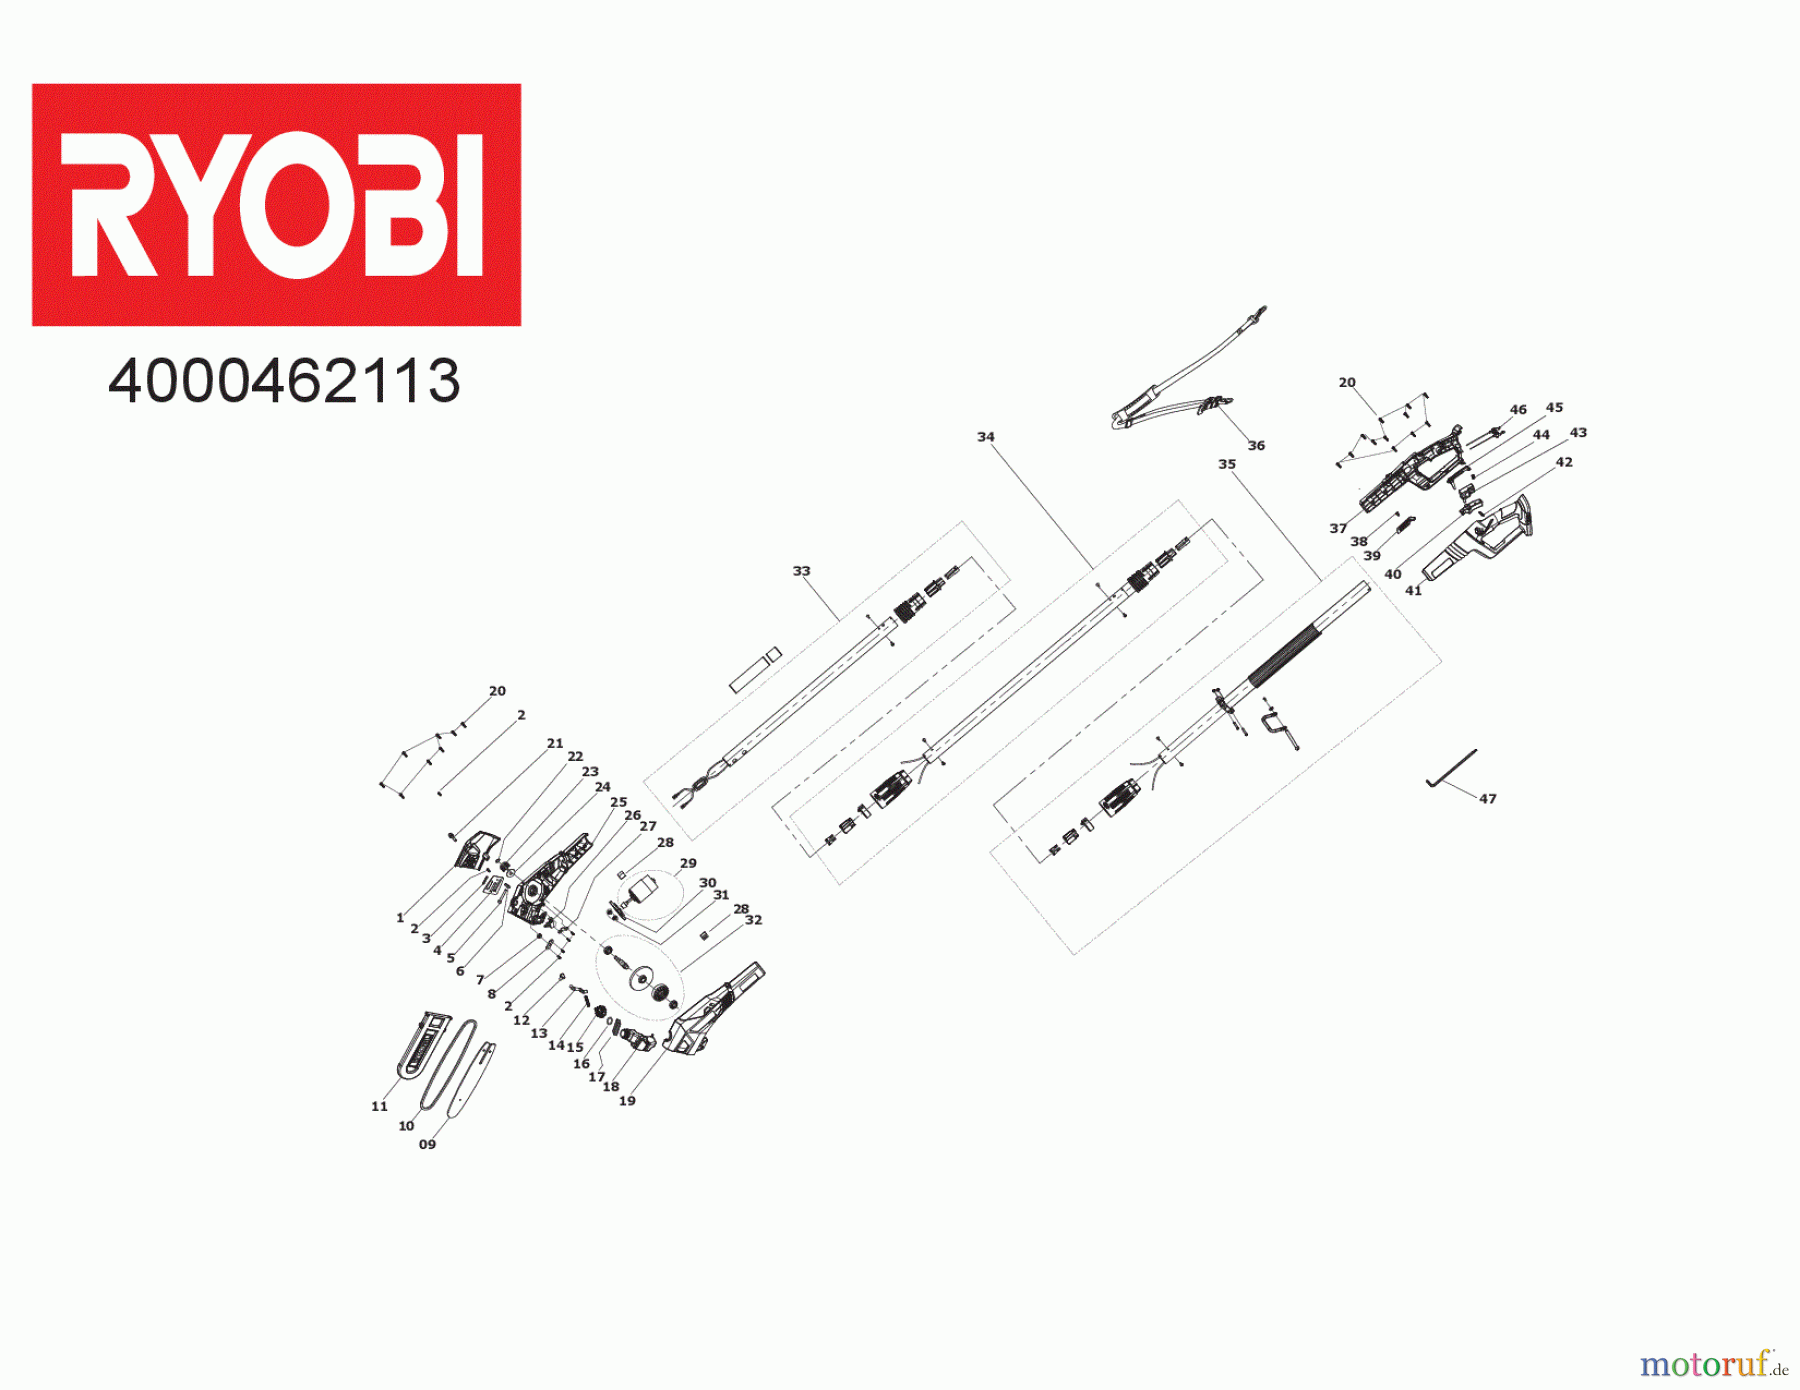  Ryobi Hochentaster RPP182020 18 V ONE+ Akku-Hochentaster, Schwertlänge 20 cm